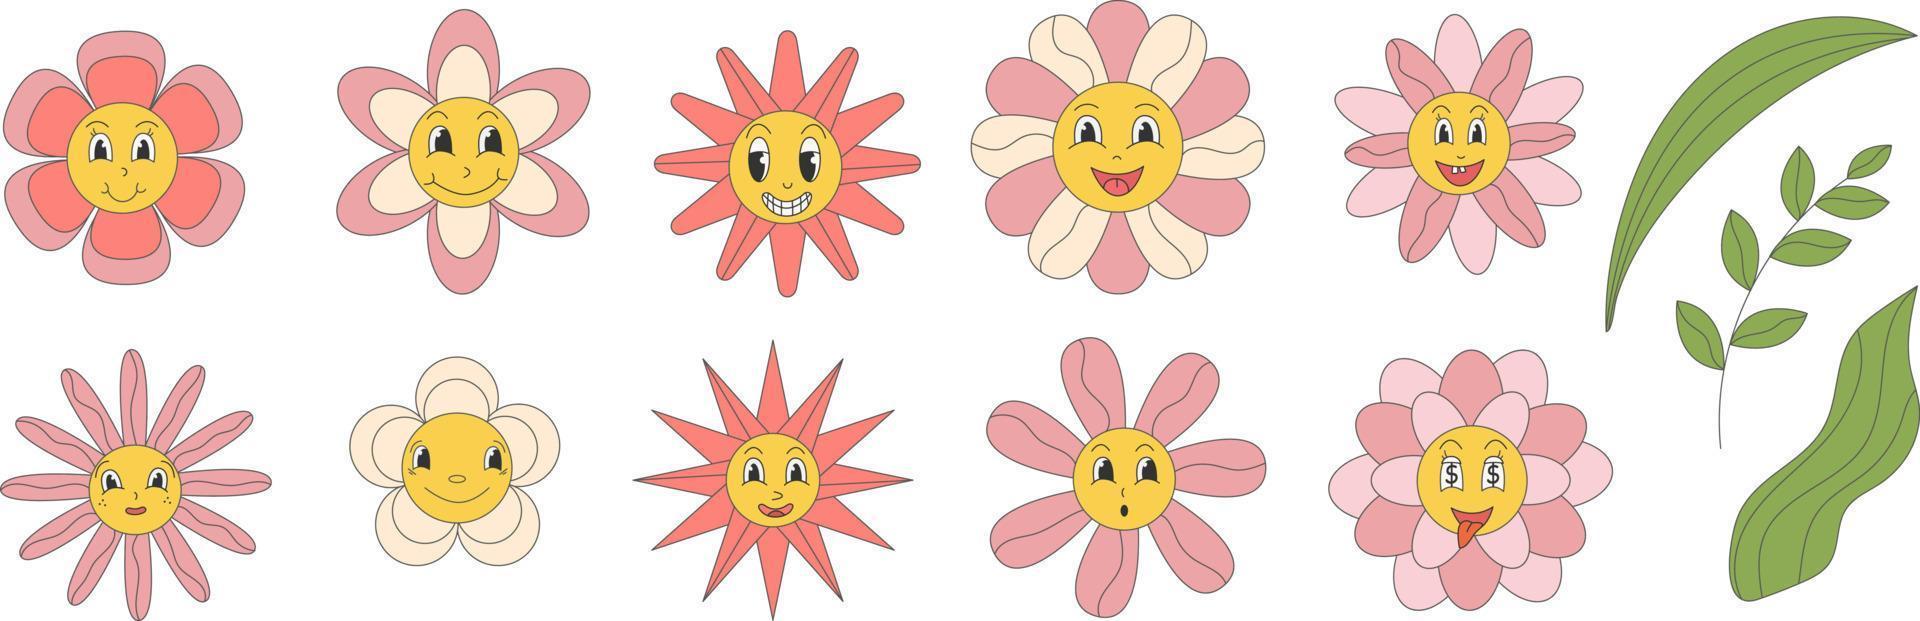 maravilloso margarita flores con dibujos animados gracioso sonriente caras, manzanilla caracteres. linda manzanilla contento emoción. ilustración de sonrisa floral flor, floración manzanilla vector